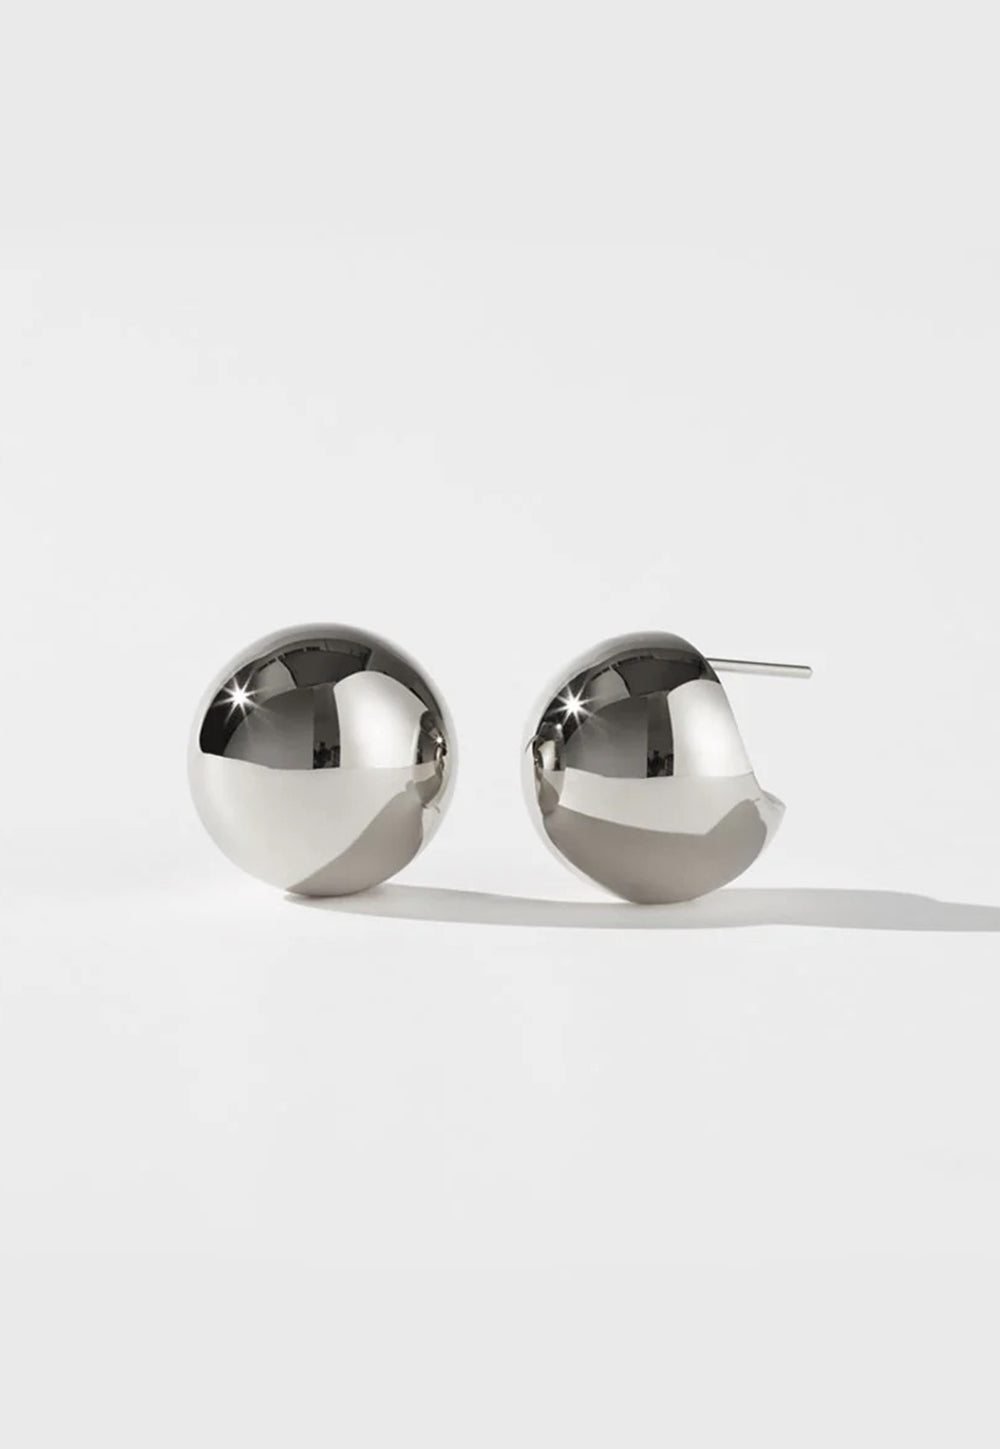 Orb Earrings Medium sold by Angel Divine